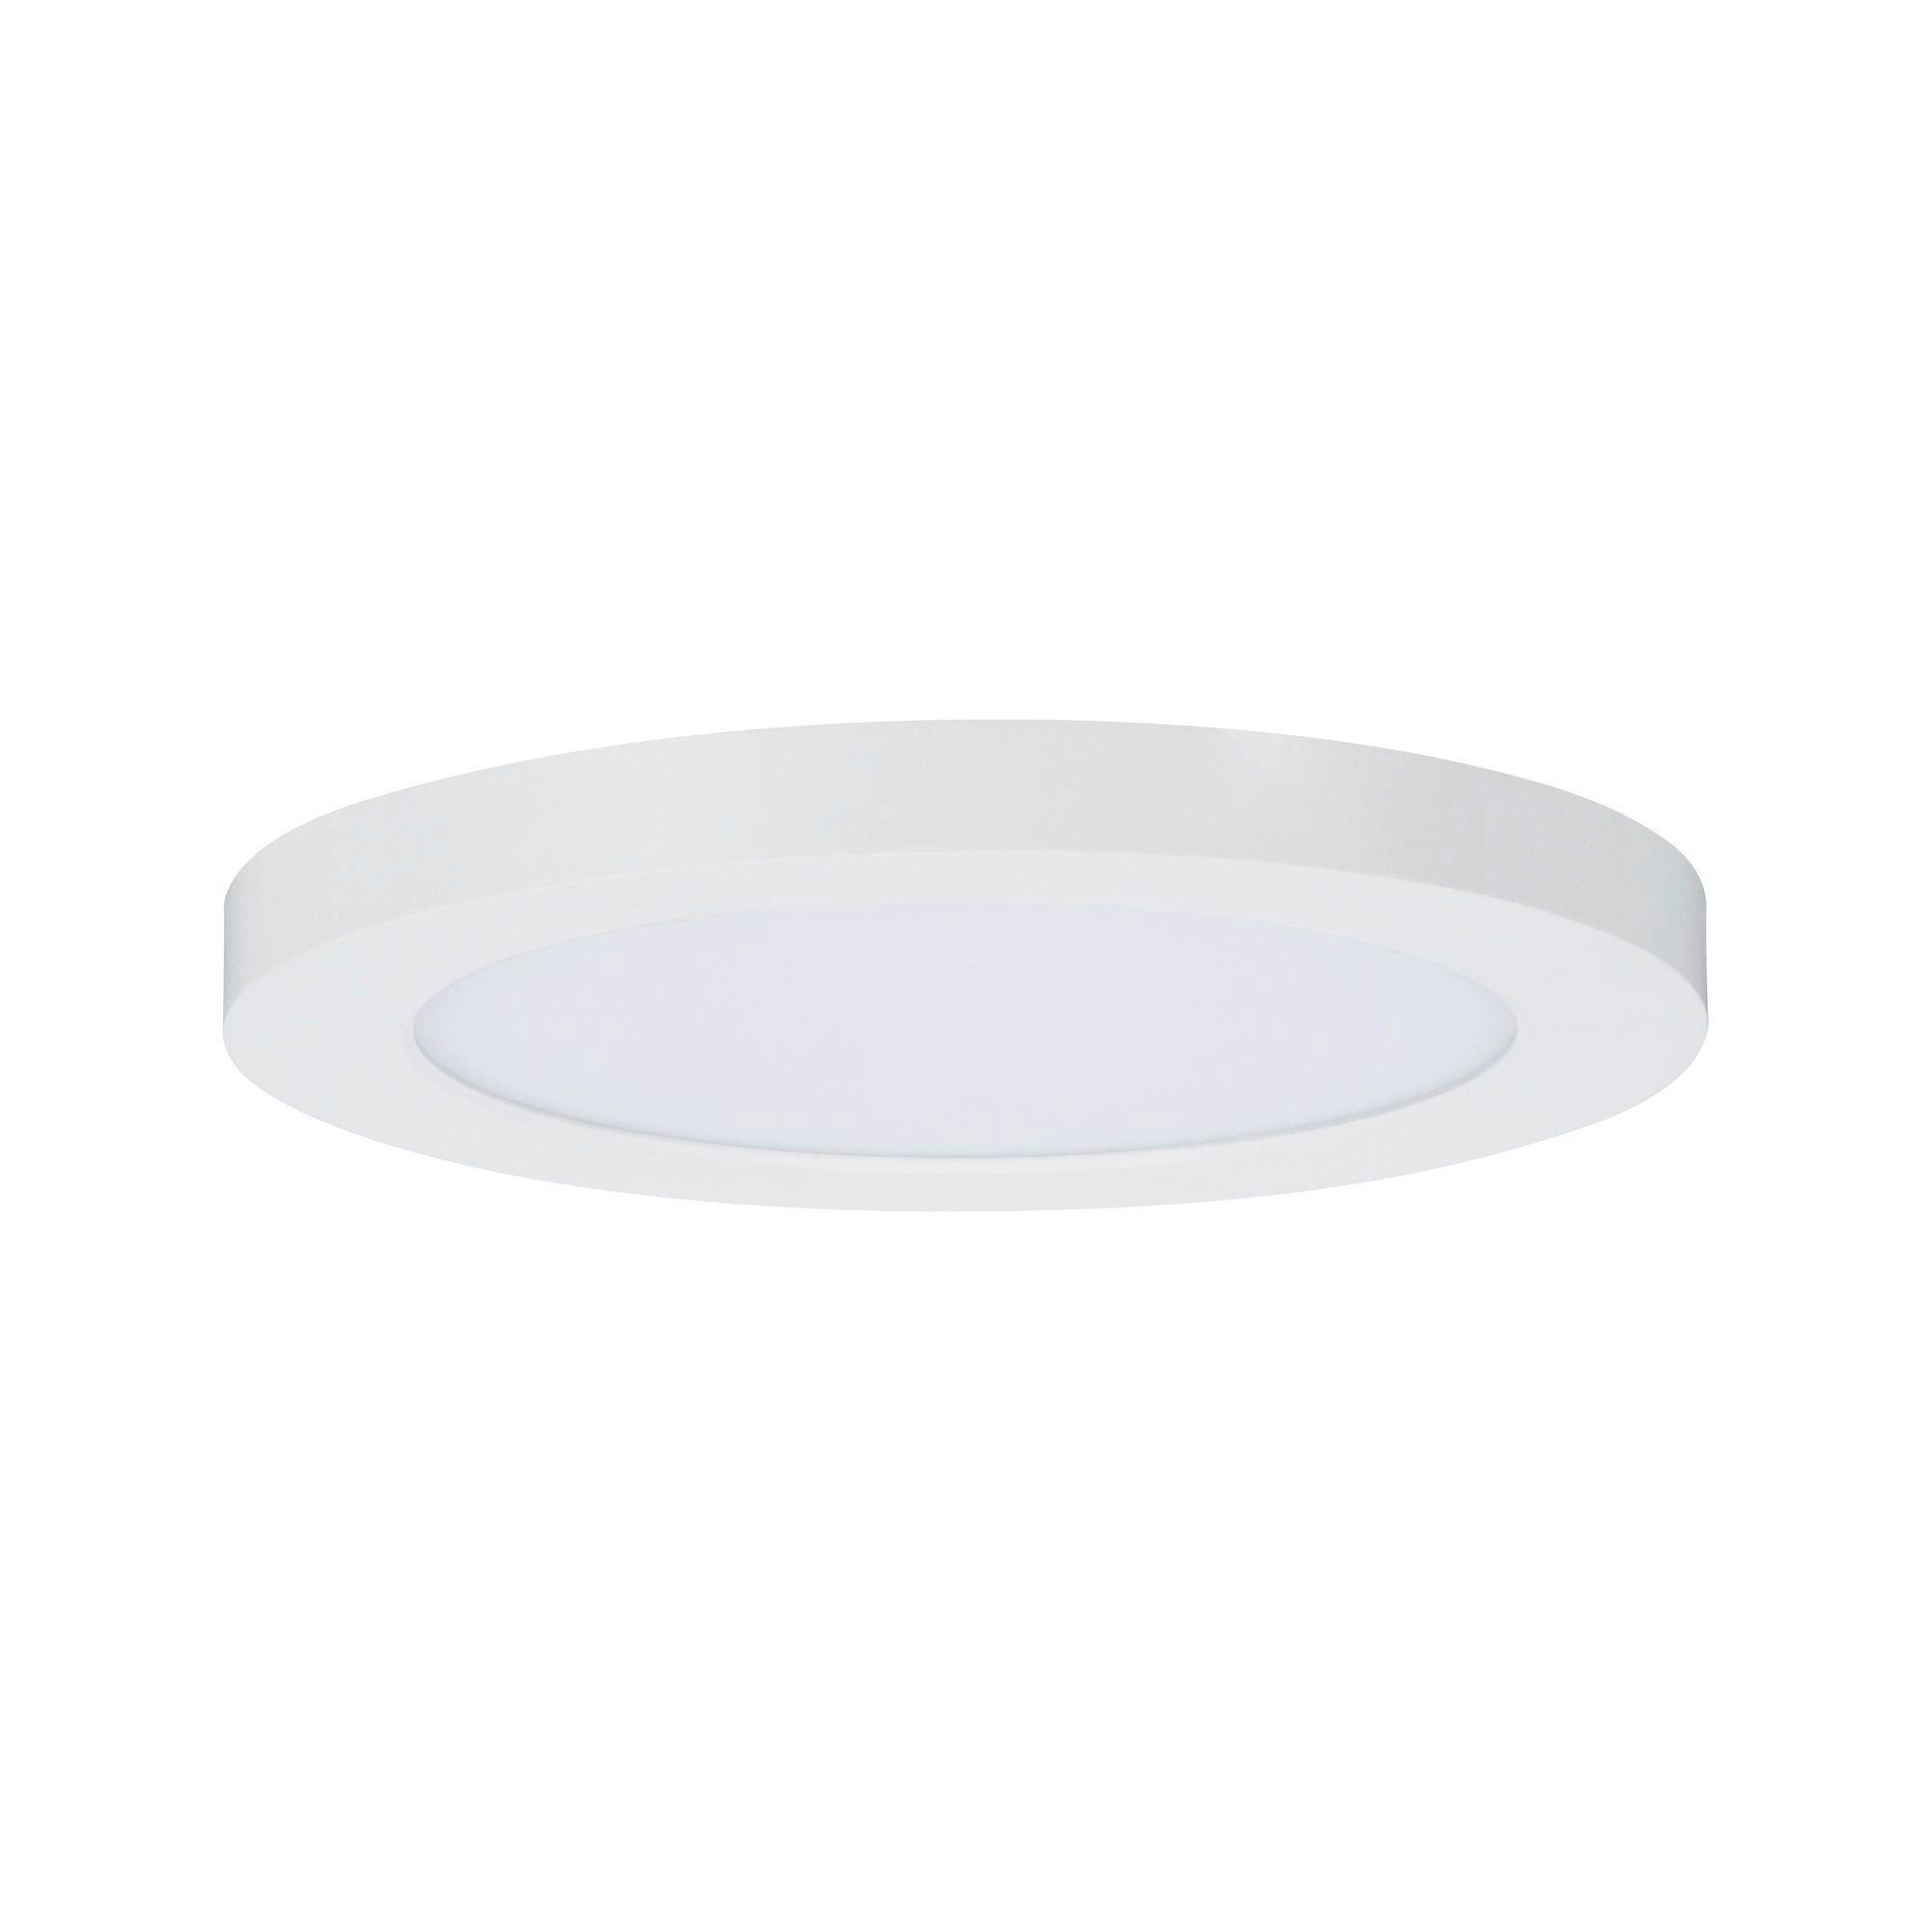 LED-PANEEL  - Weiß, Basics, Kunststoff (16,5cm) - Paulmann